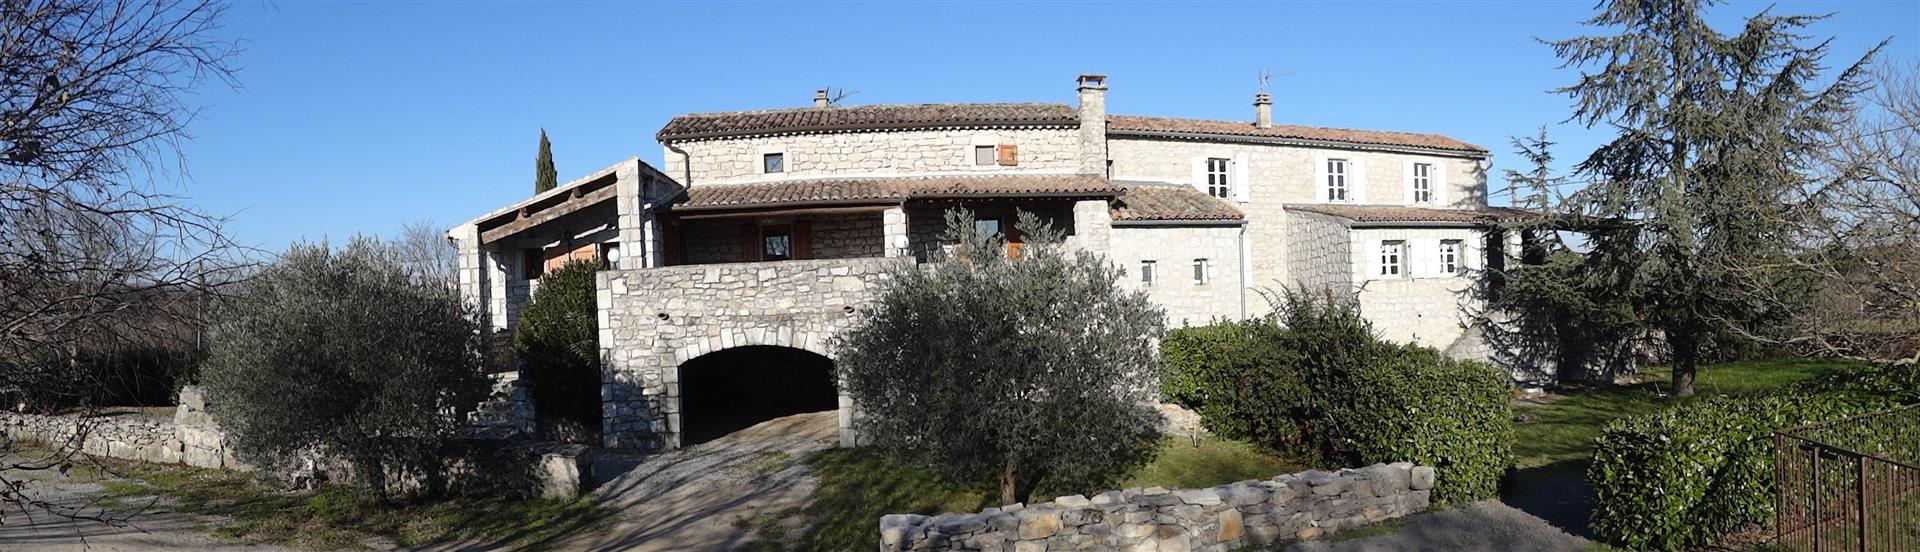 Bella e grande vecchia casa Ardèche di carattere in pietra